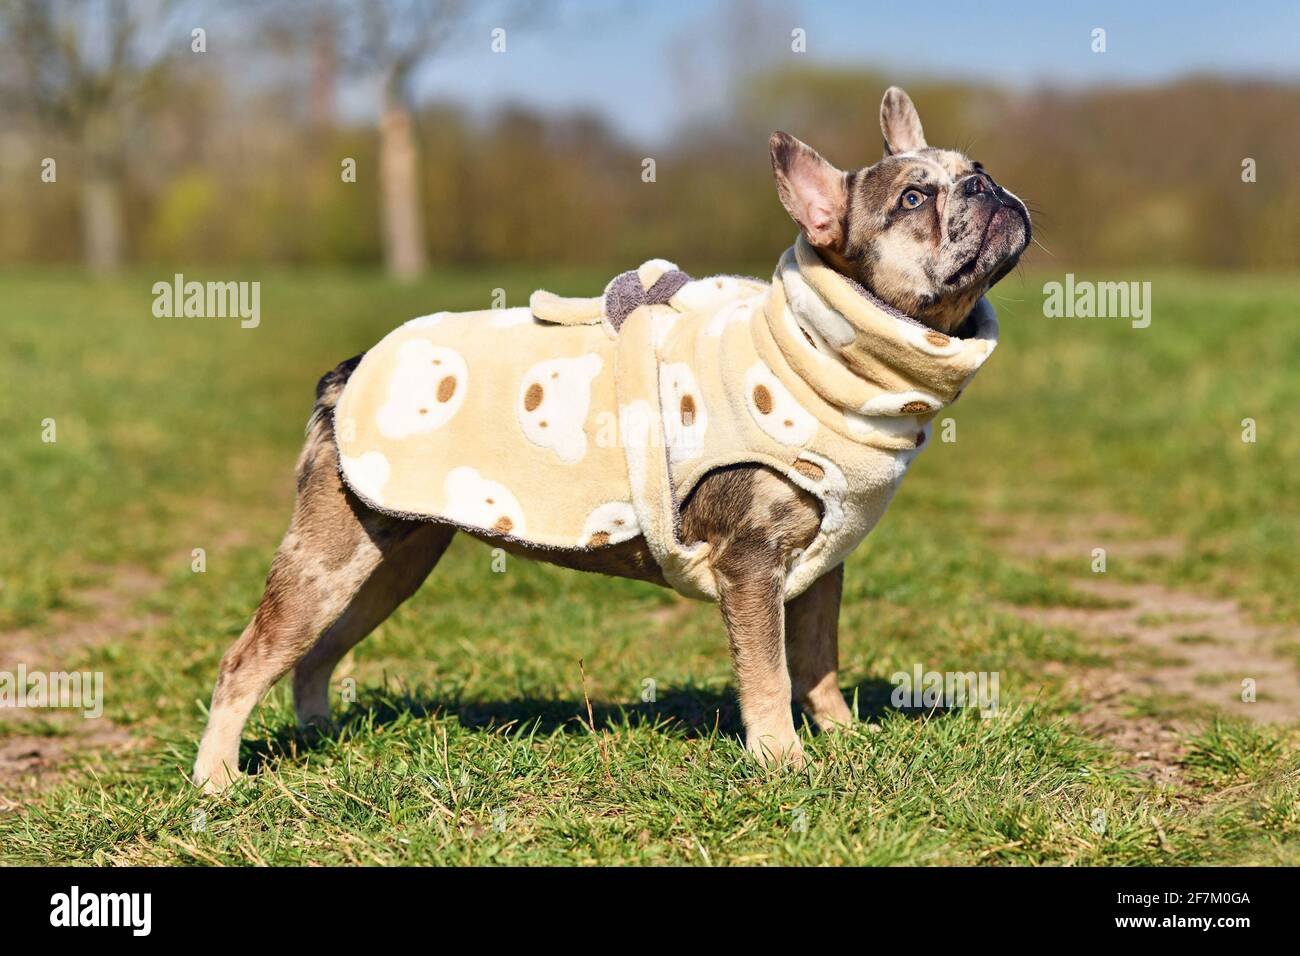 Les chiens de Bulldog français de couleur Merle portent un peignoir en polaire tissu pour sécher plus rapidement après la natation Banque D'Images